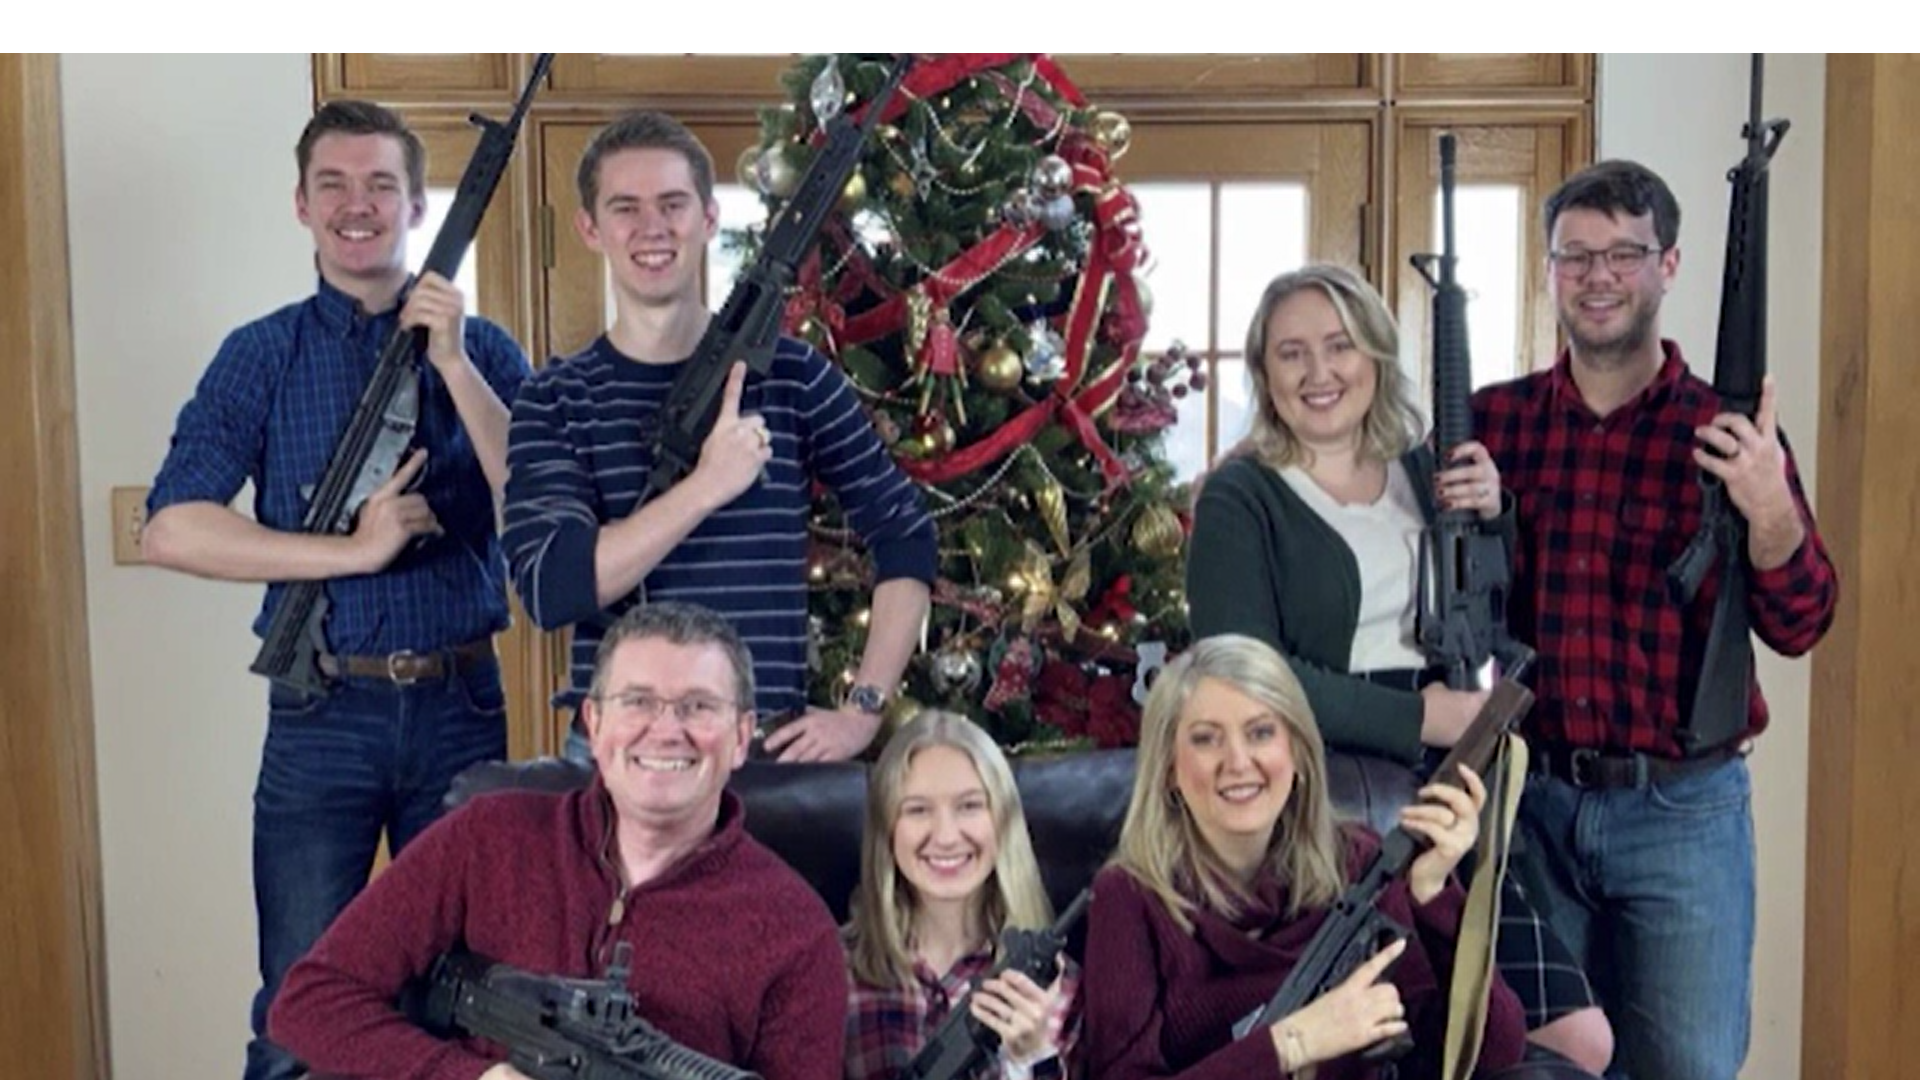 Un membru al Congresului SUA a făcut publică imaginea cu el și membrii familiei, înarmați cu toții lângă bradul de Crăciun